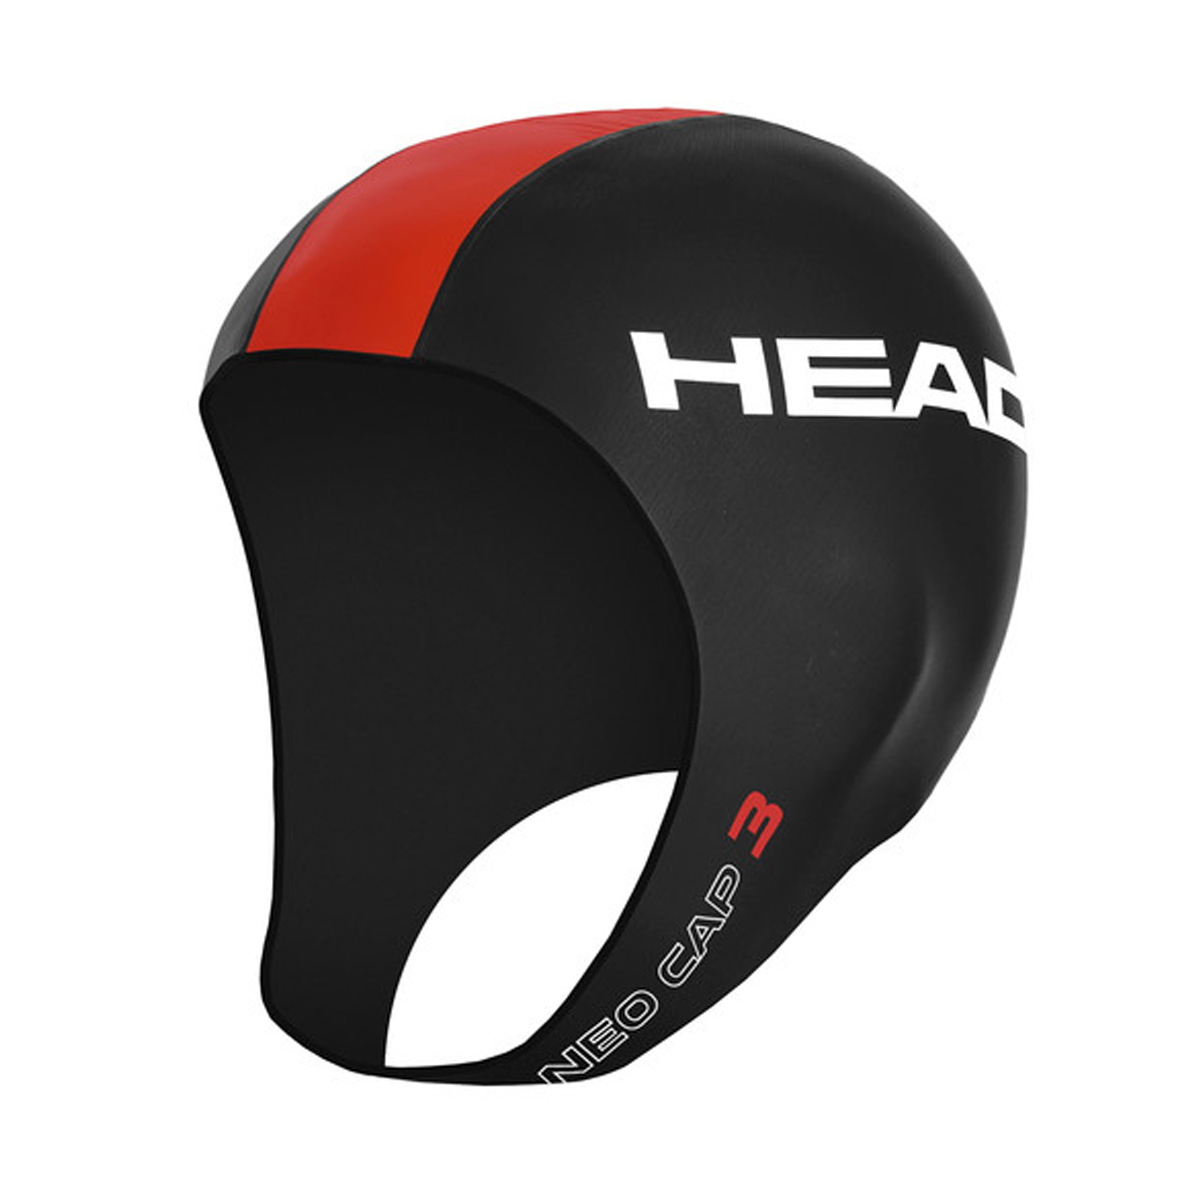 Head Neo Cap 3 - Black / Red